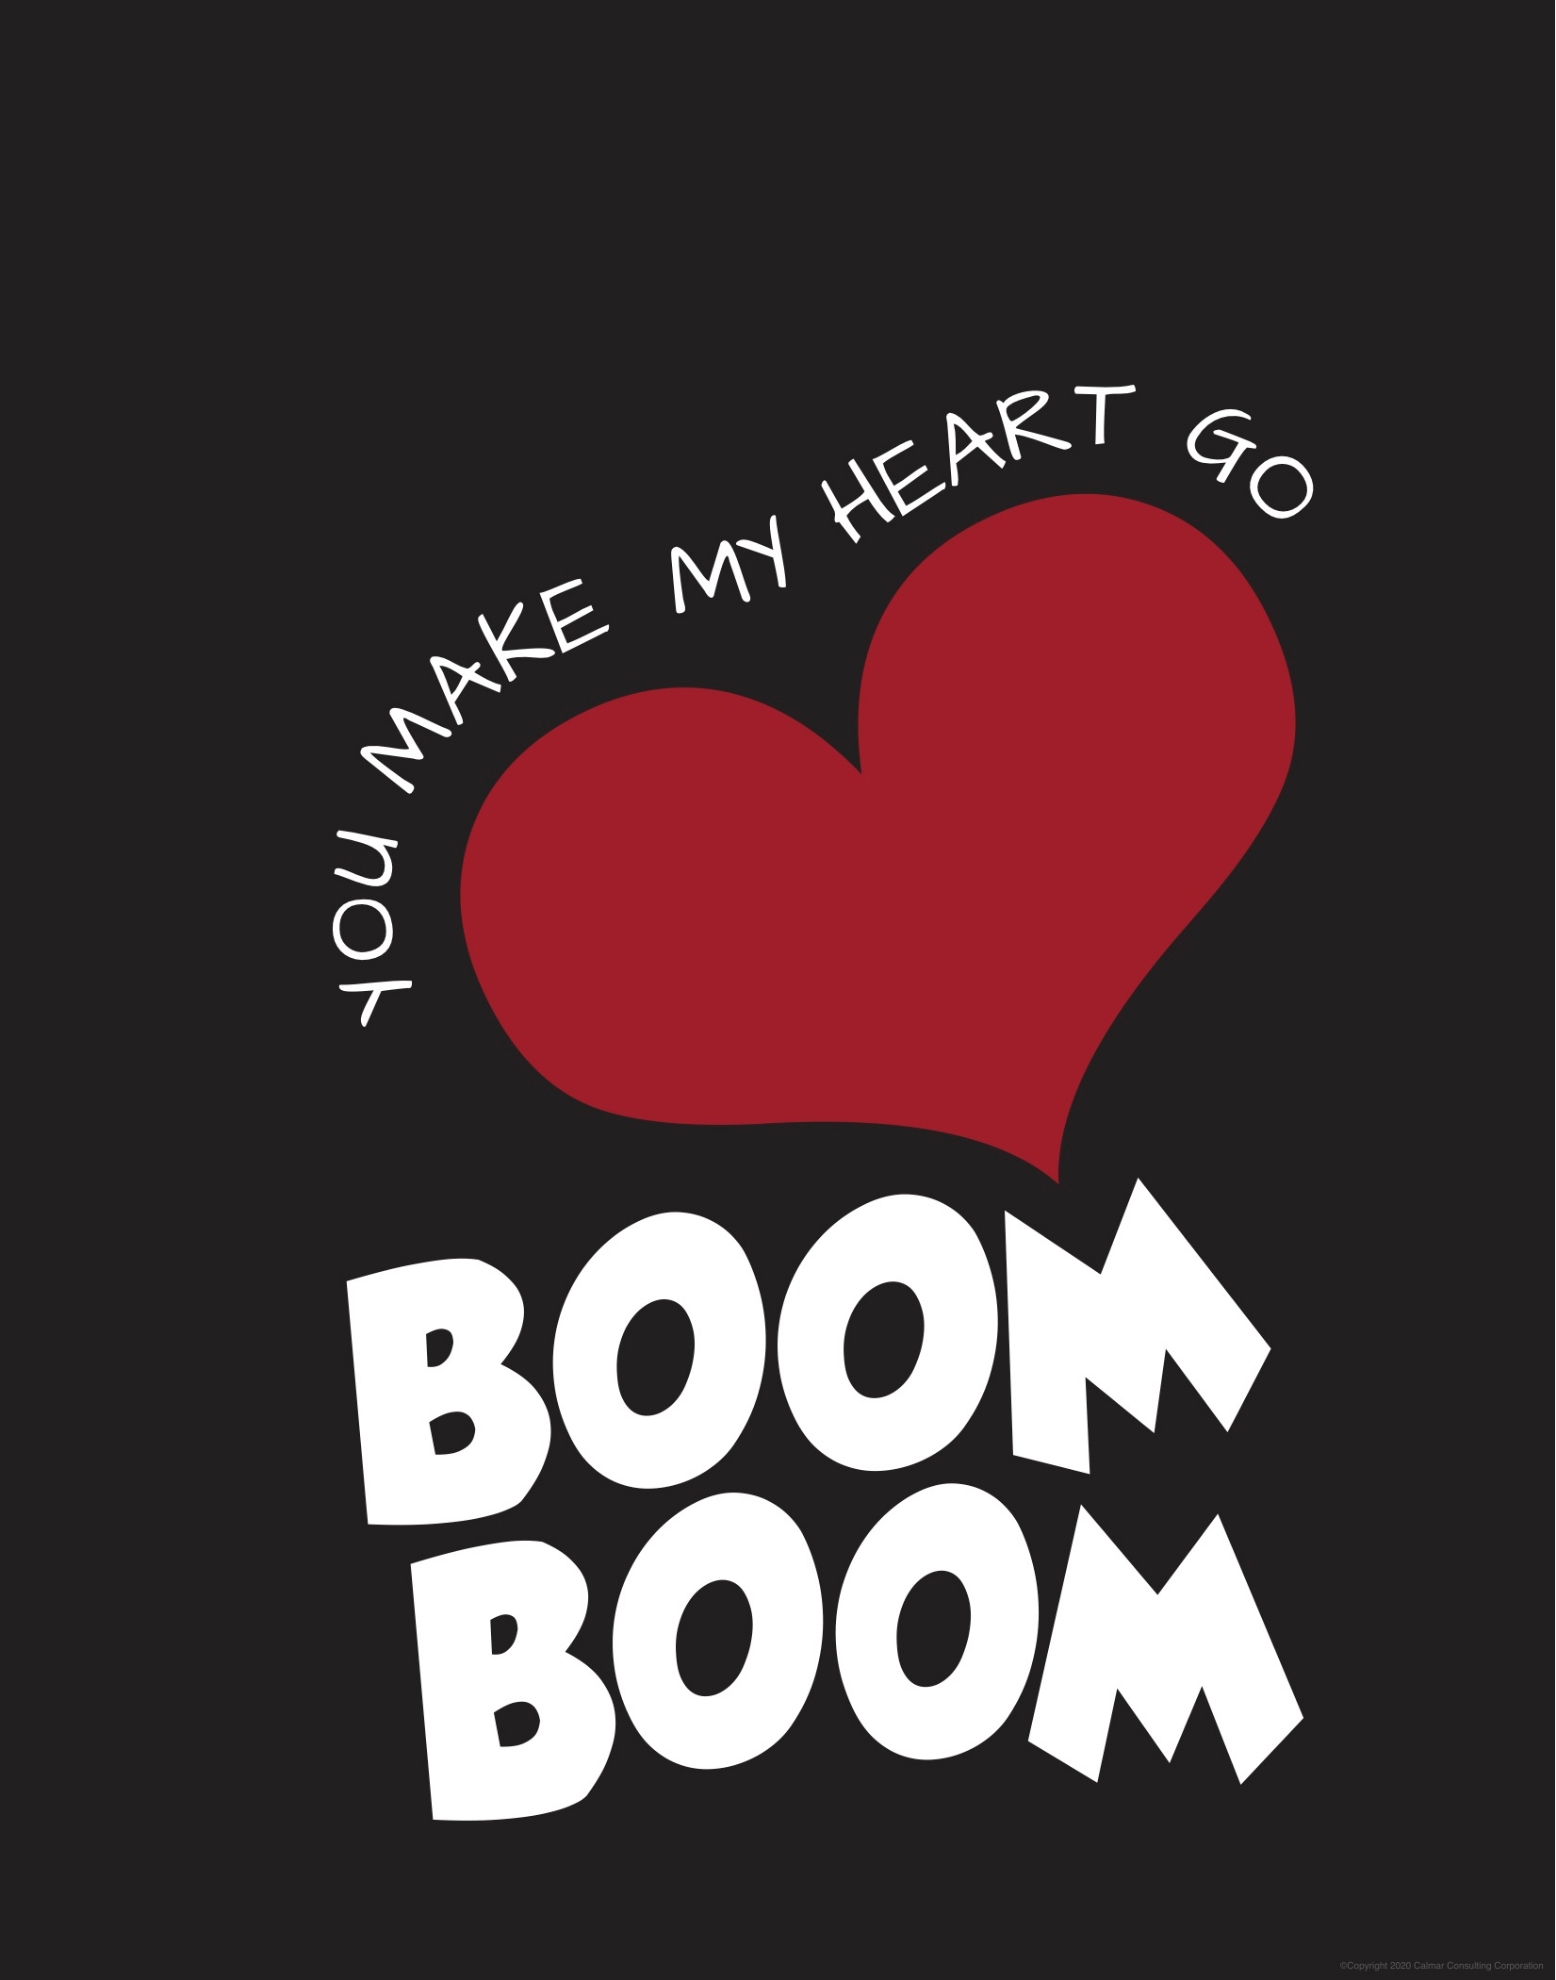 you make my heart go boom boom